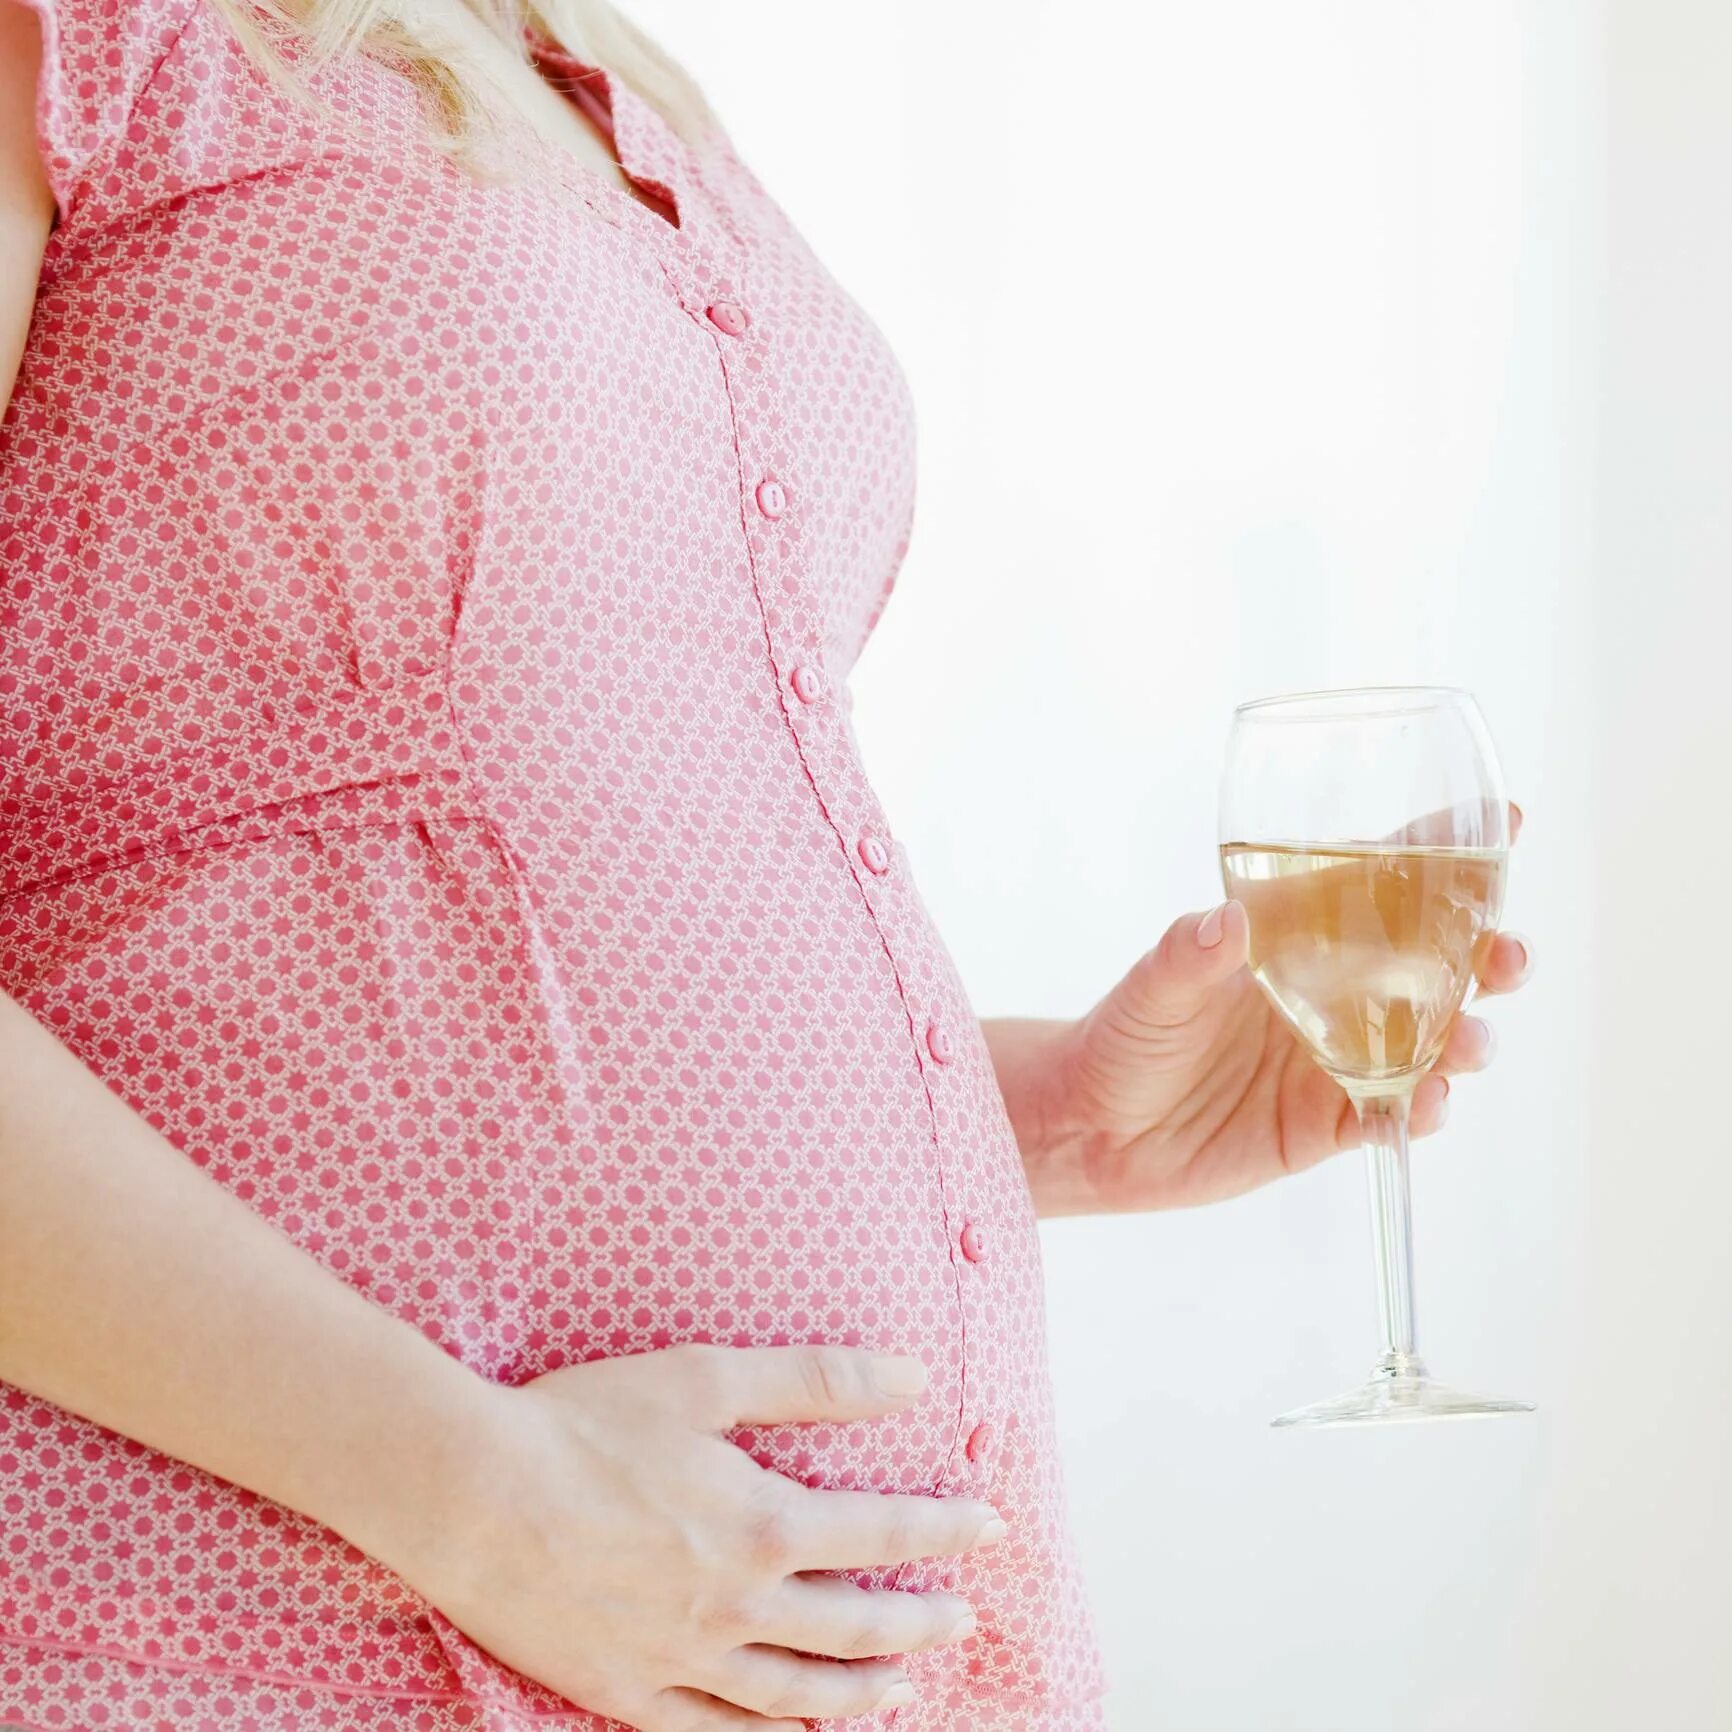 Бокал вина беременной. Беременность. Алкоголь и беременность. Вино для беременных. Пьющие беременные женщины.